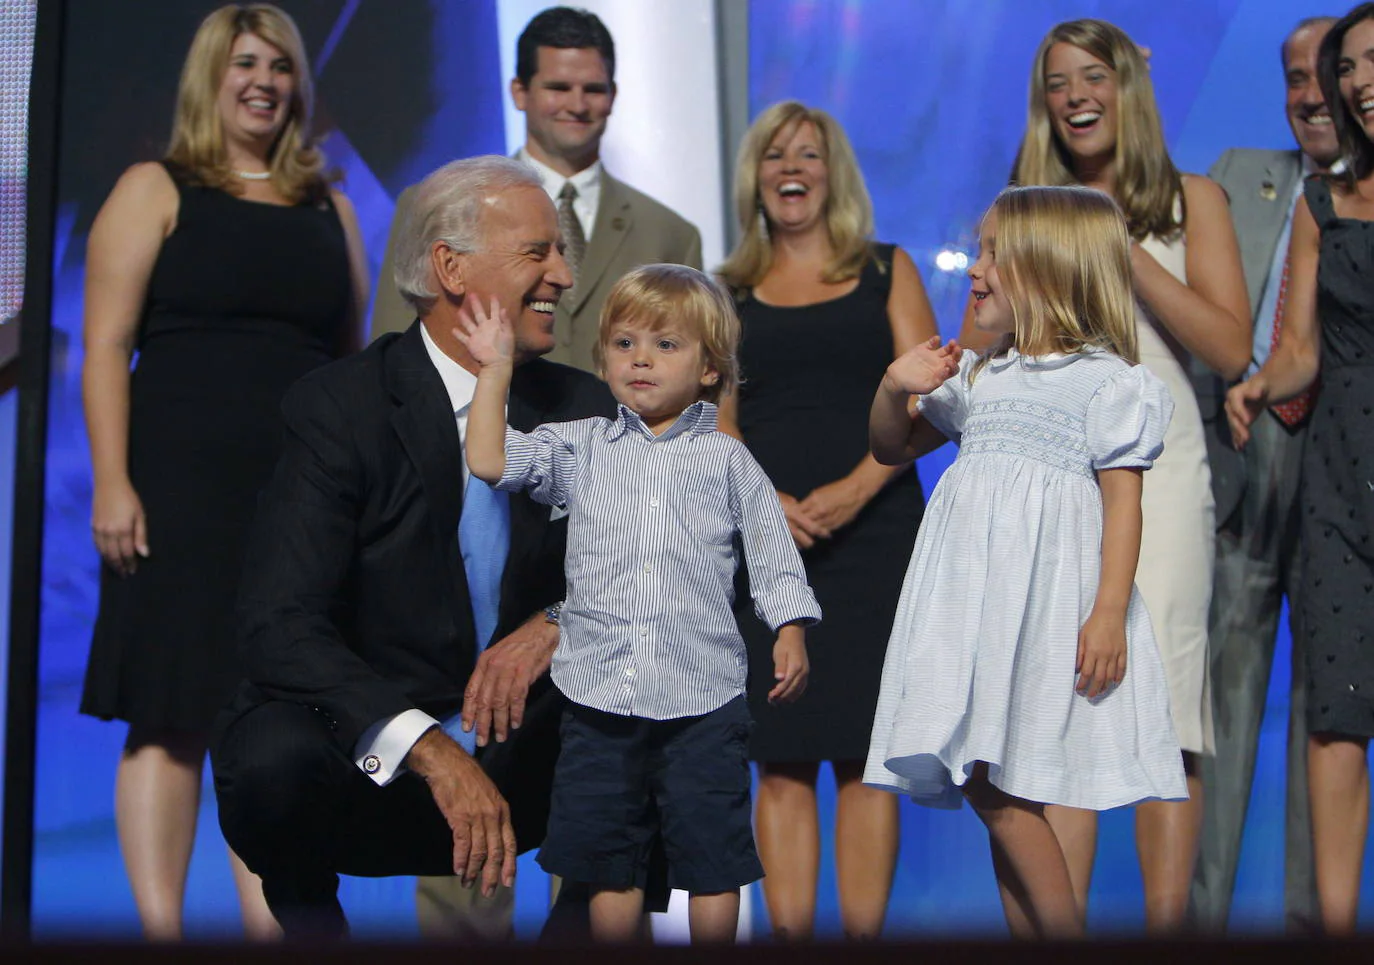 Las mejores imágenes de Joe Biden en las elecciones presidenciales de EE UU